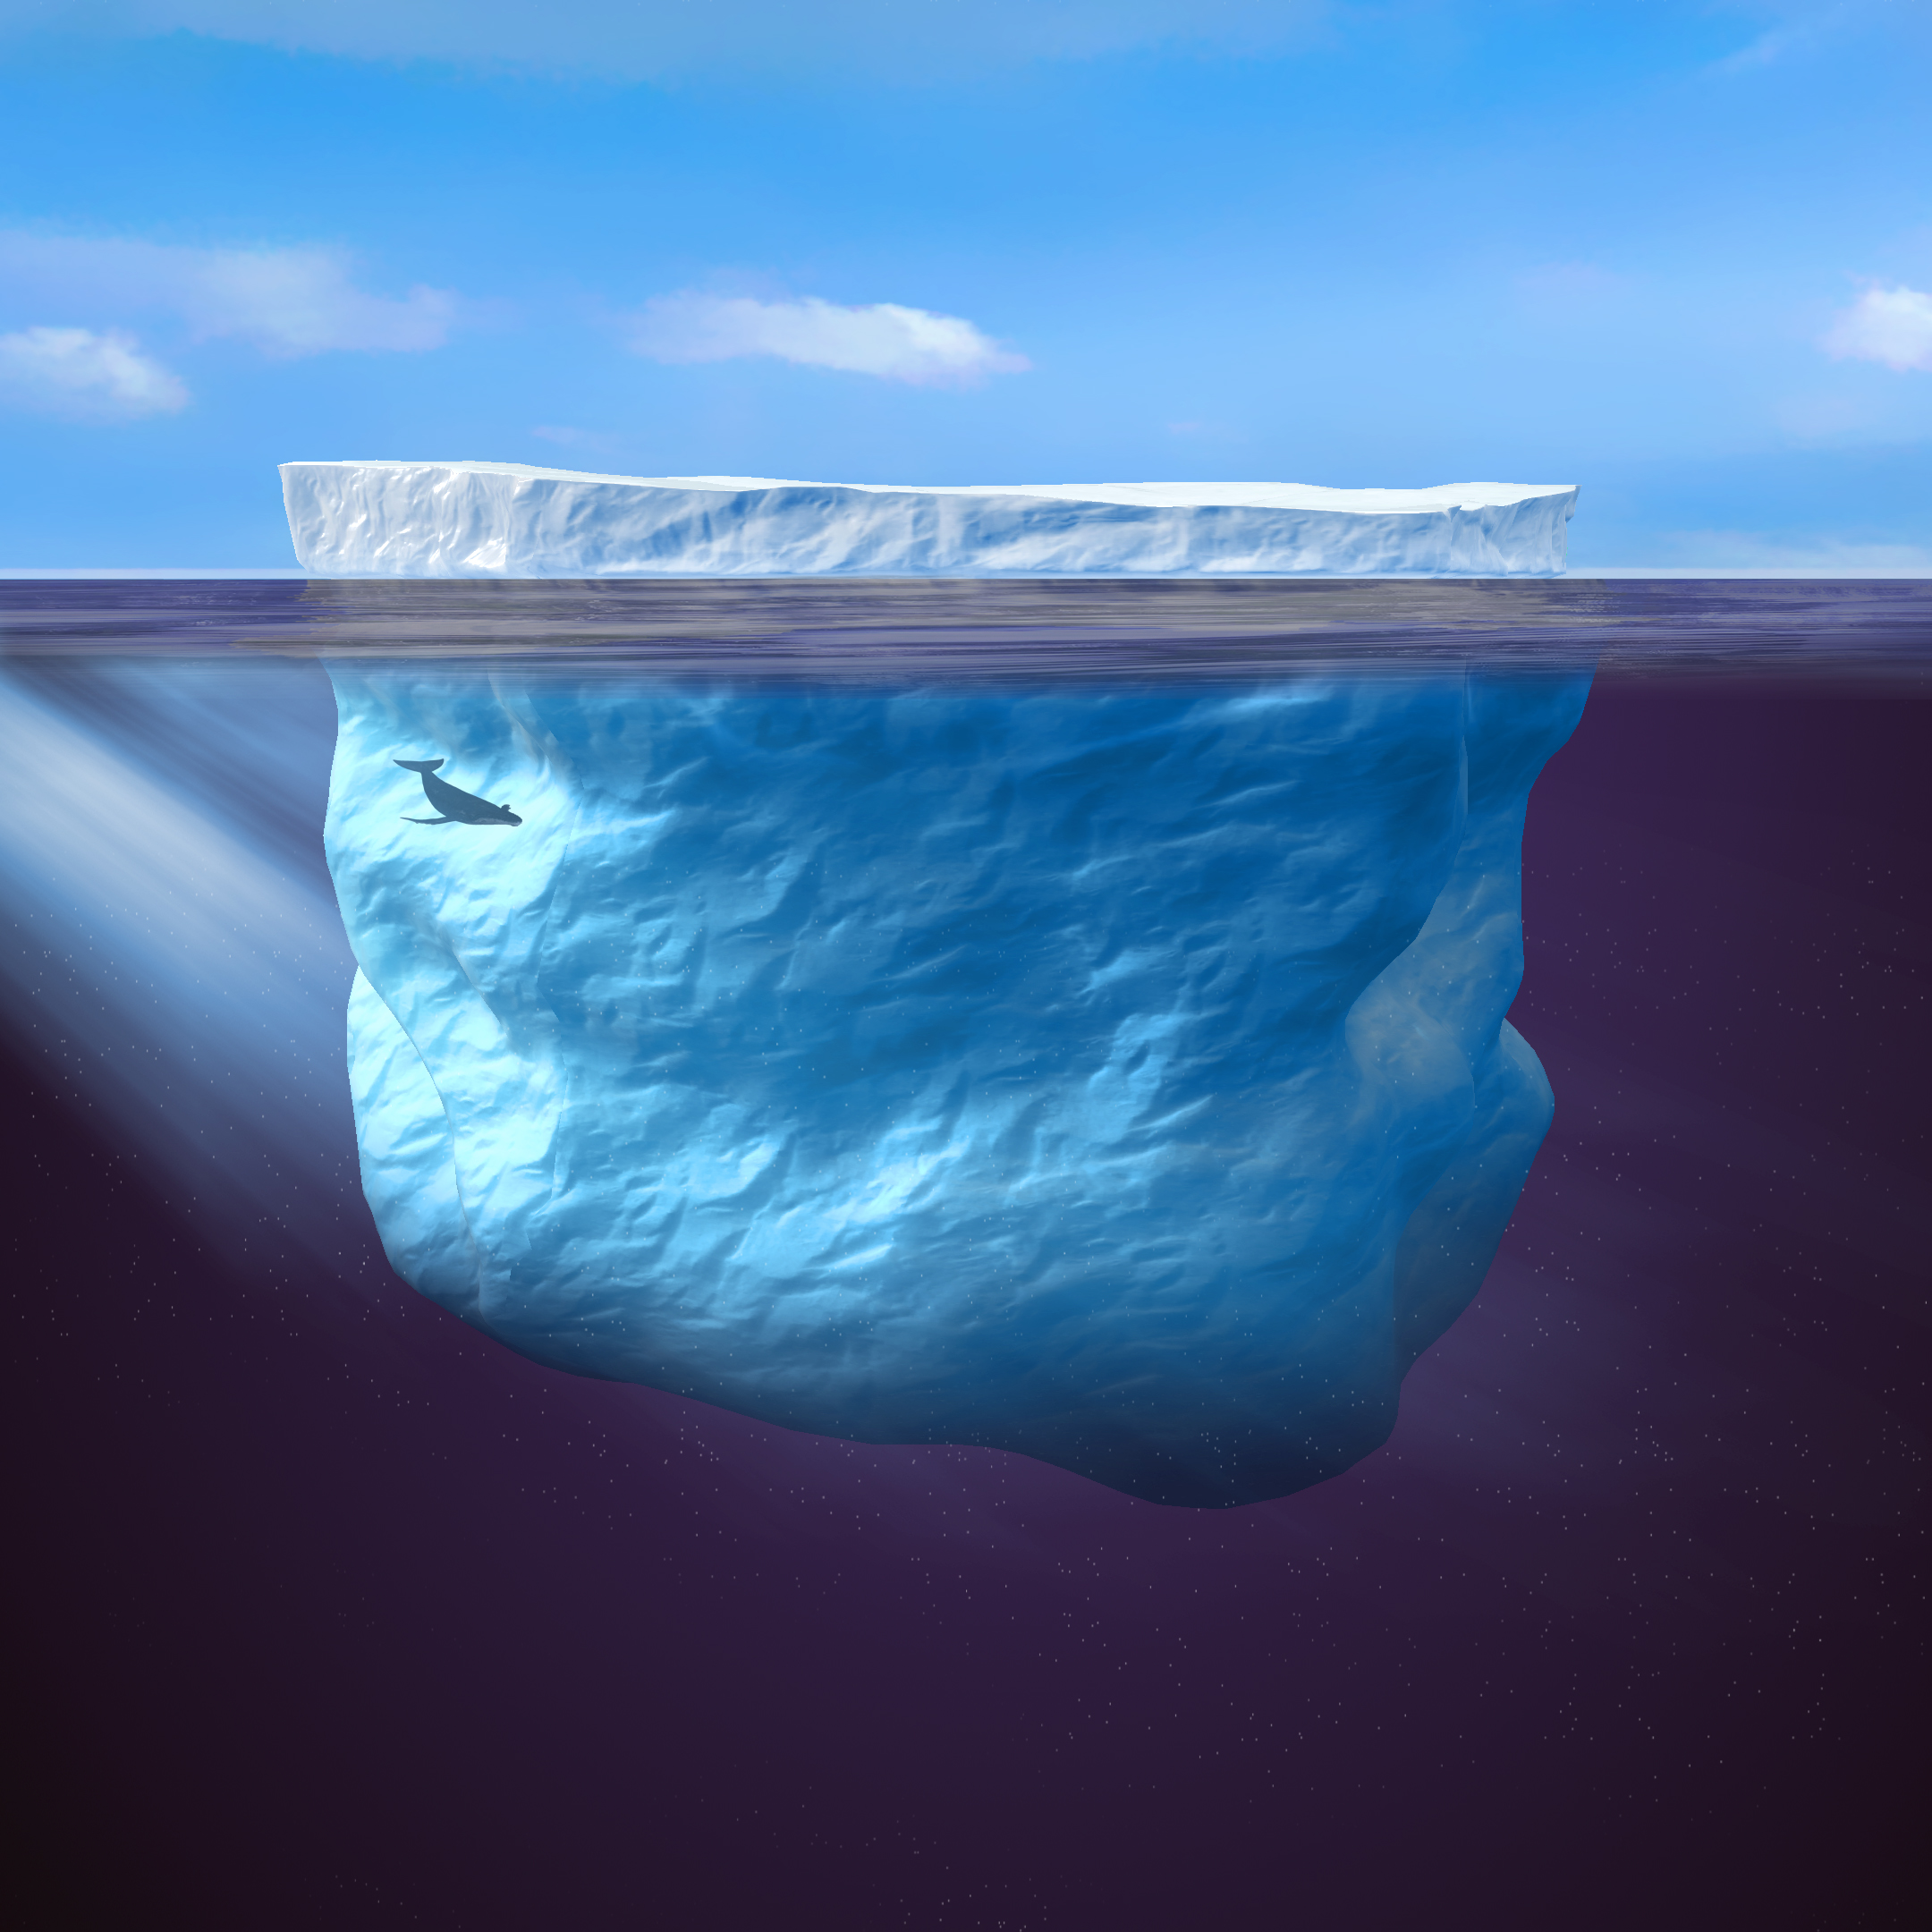 La plate-forme 3DEXPERIENCE permet de simuler des expériences hors du commun comme le remorquage d'un iceberg